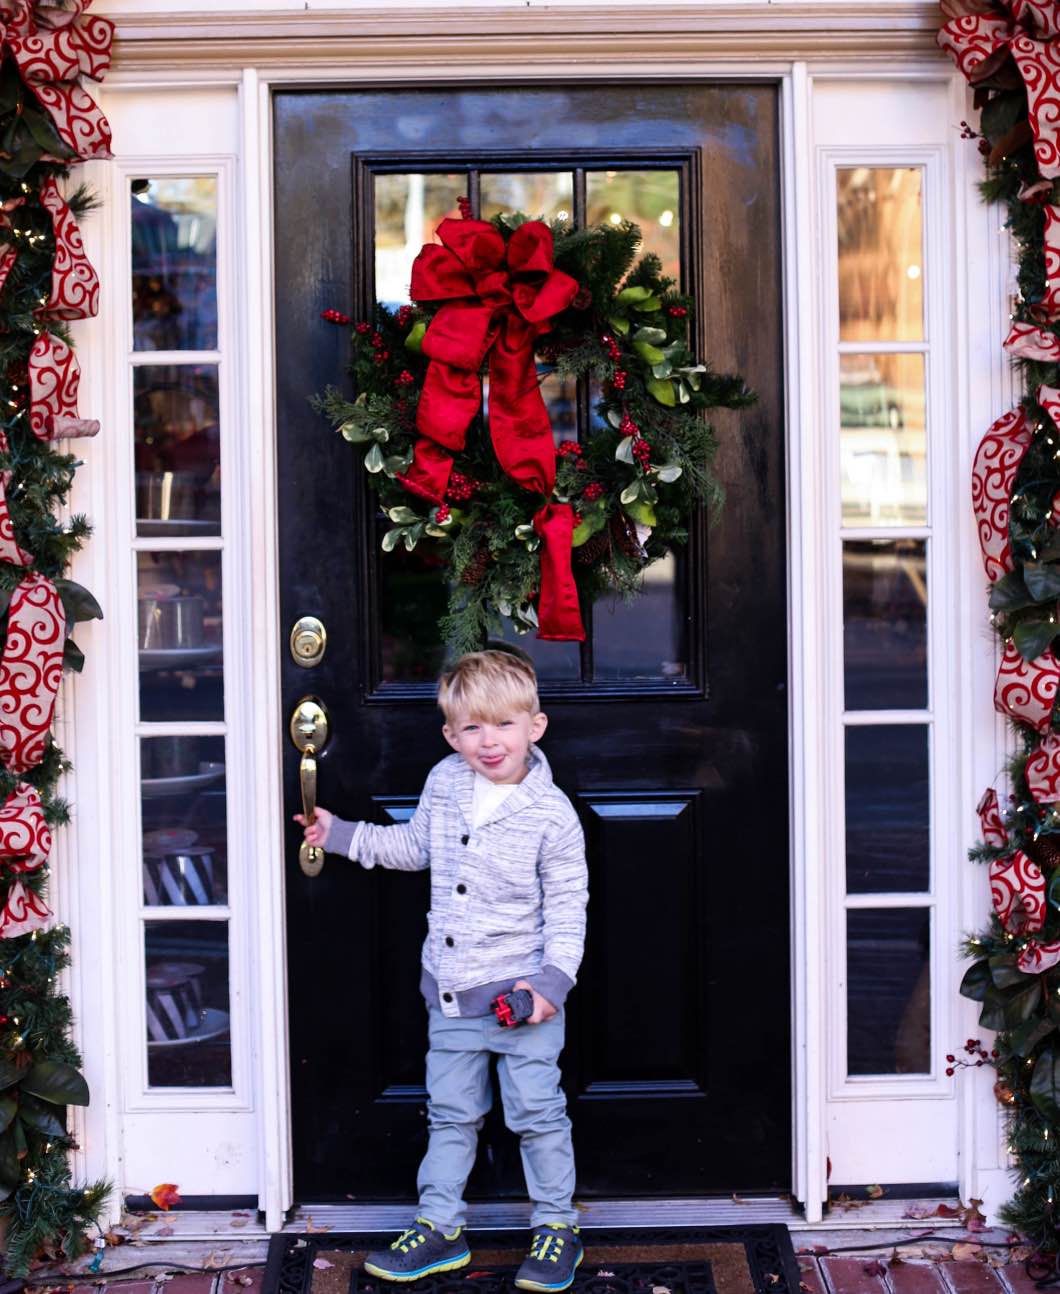 OshKosh Christmas Fashion - Baby and Toddler Holiday Outfits with OshKosh B'gosh by Atlanta style blogger Happily Hughes